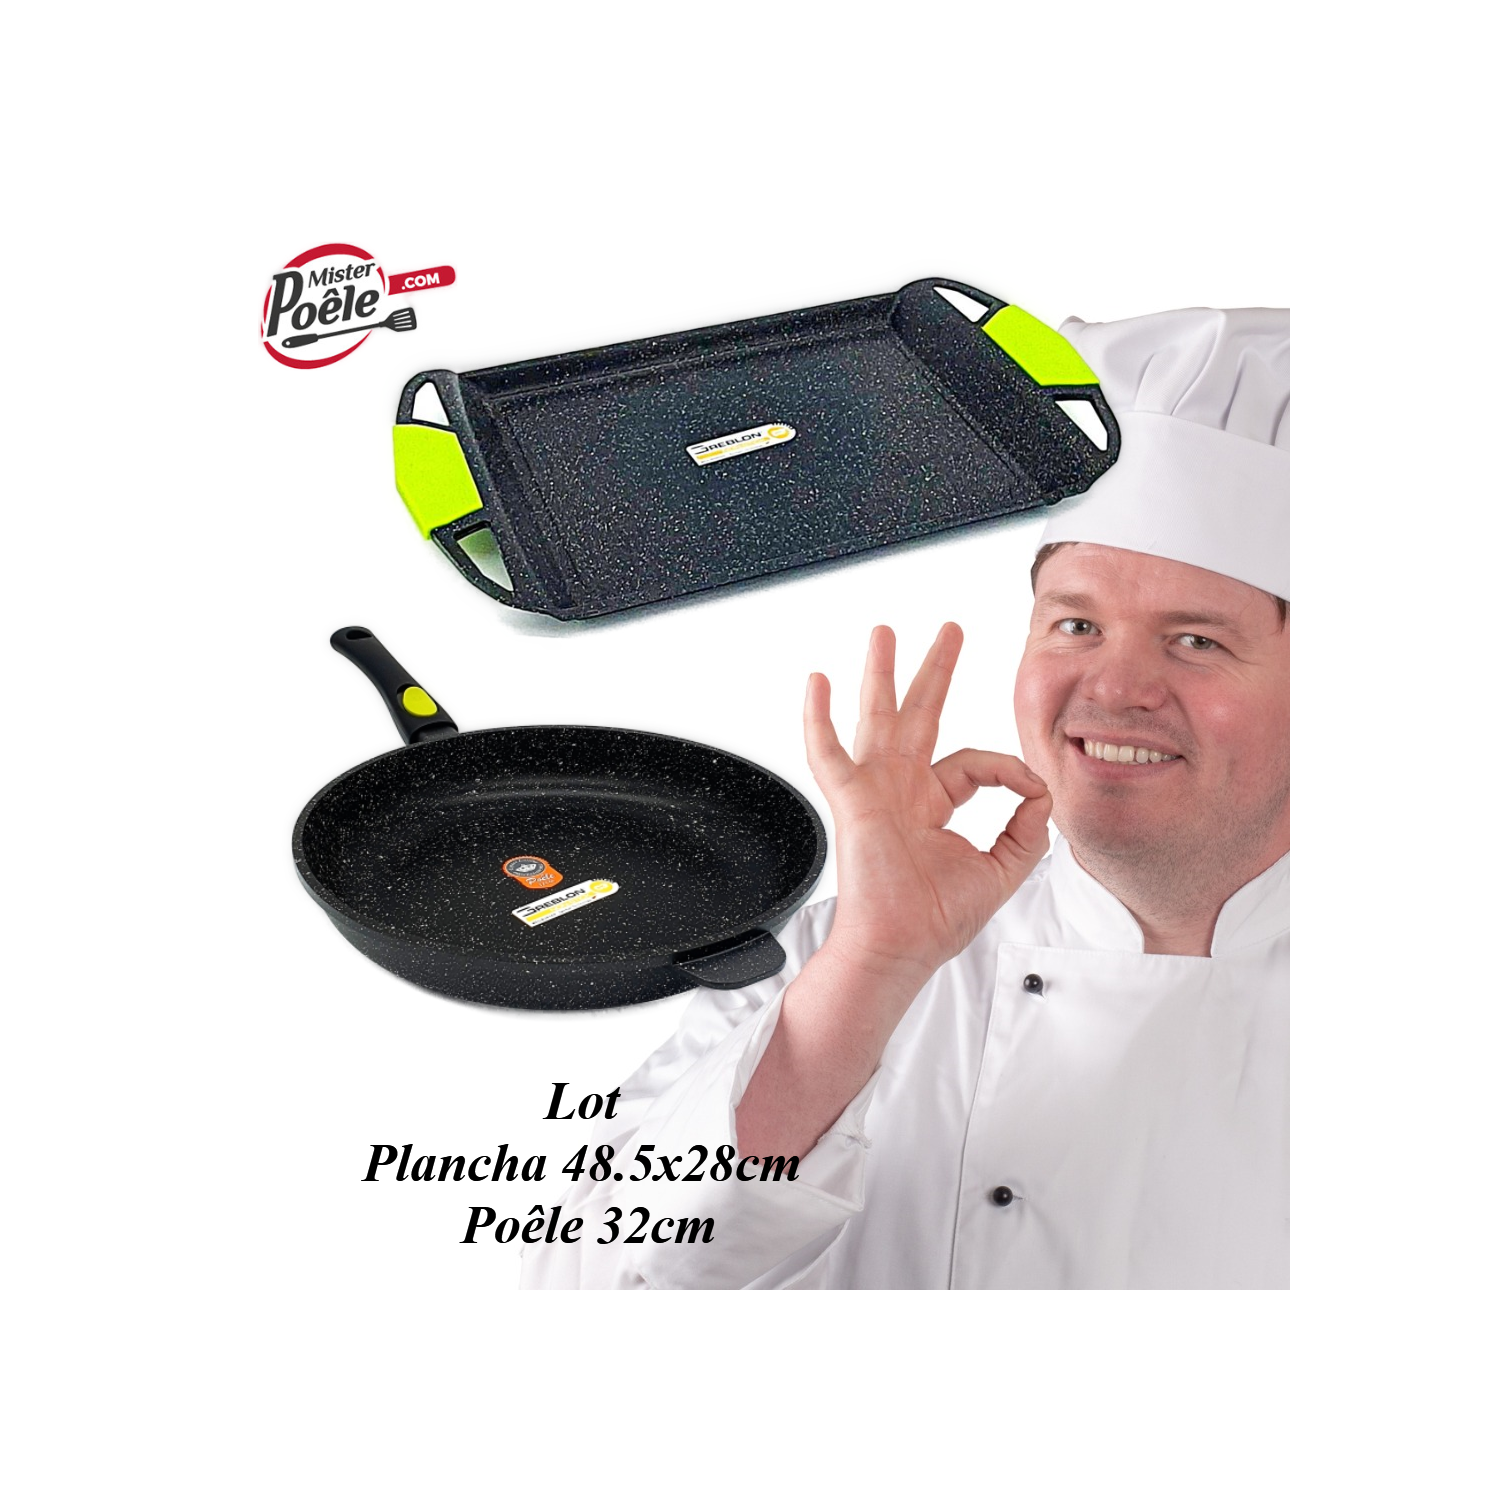 Poêle 32cm / Plancha 48.5cmx28cm Espace Cuisine Professionnel